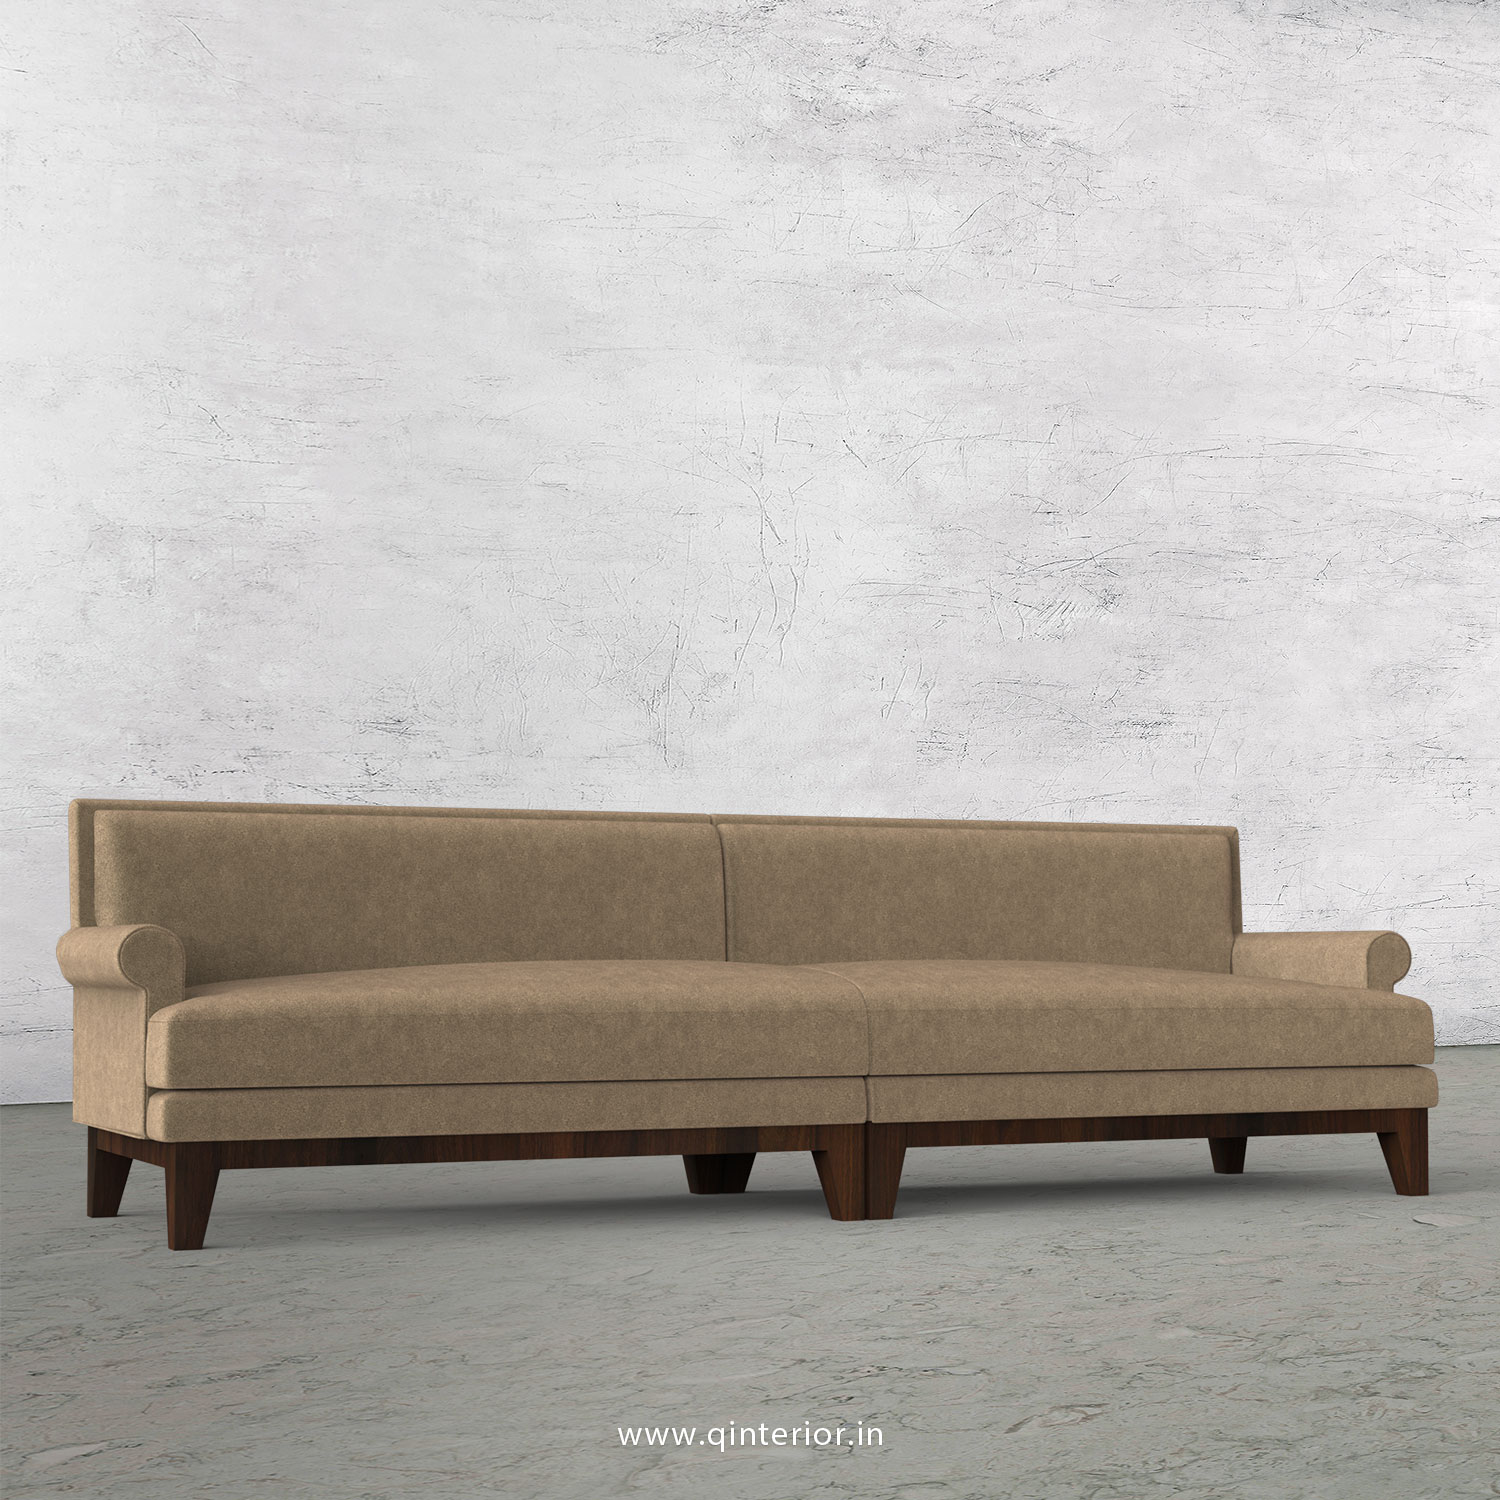 Aviana 4 Seater Sofa in Velvet Fabric - SFA001 VL11